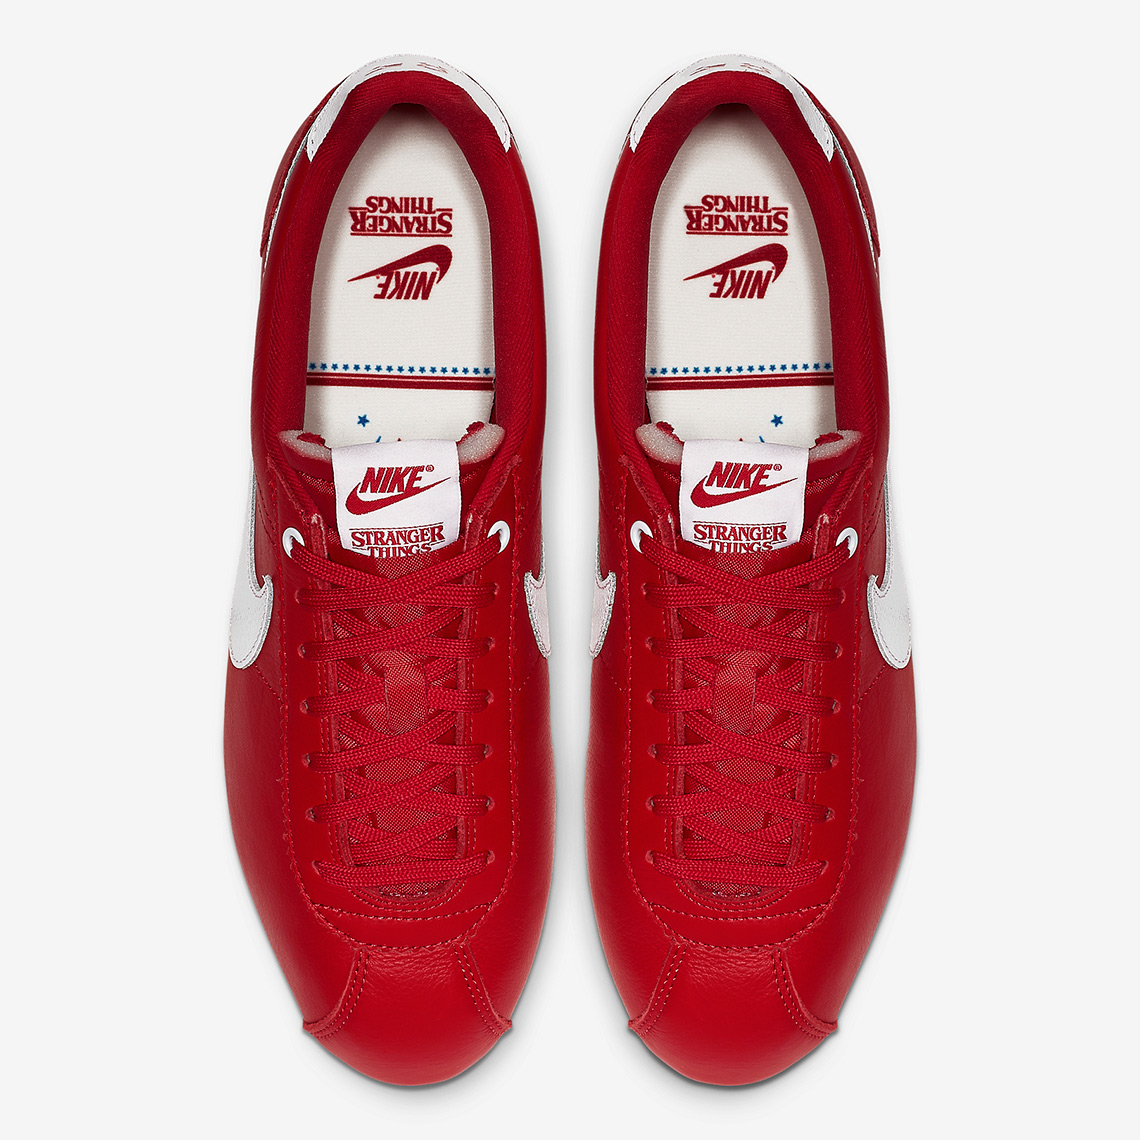 Stranger Things Nike Cortez Red OG CK1907-600 | SneakerNews.com1140 x 1140